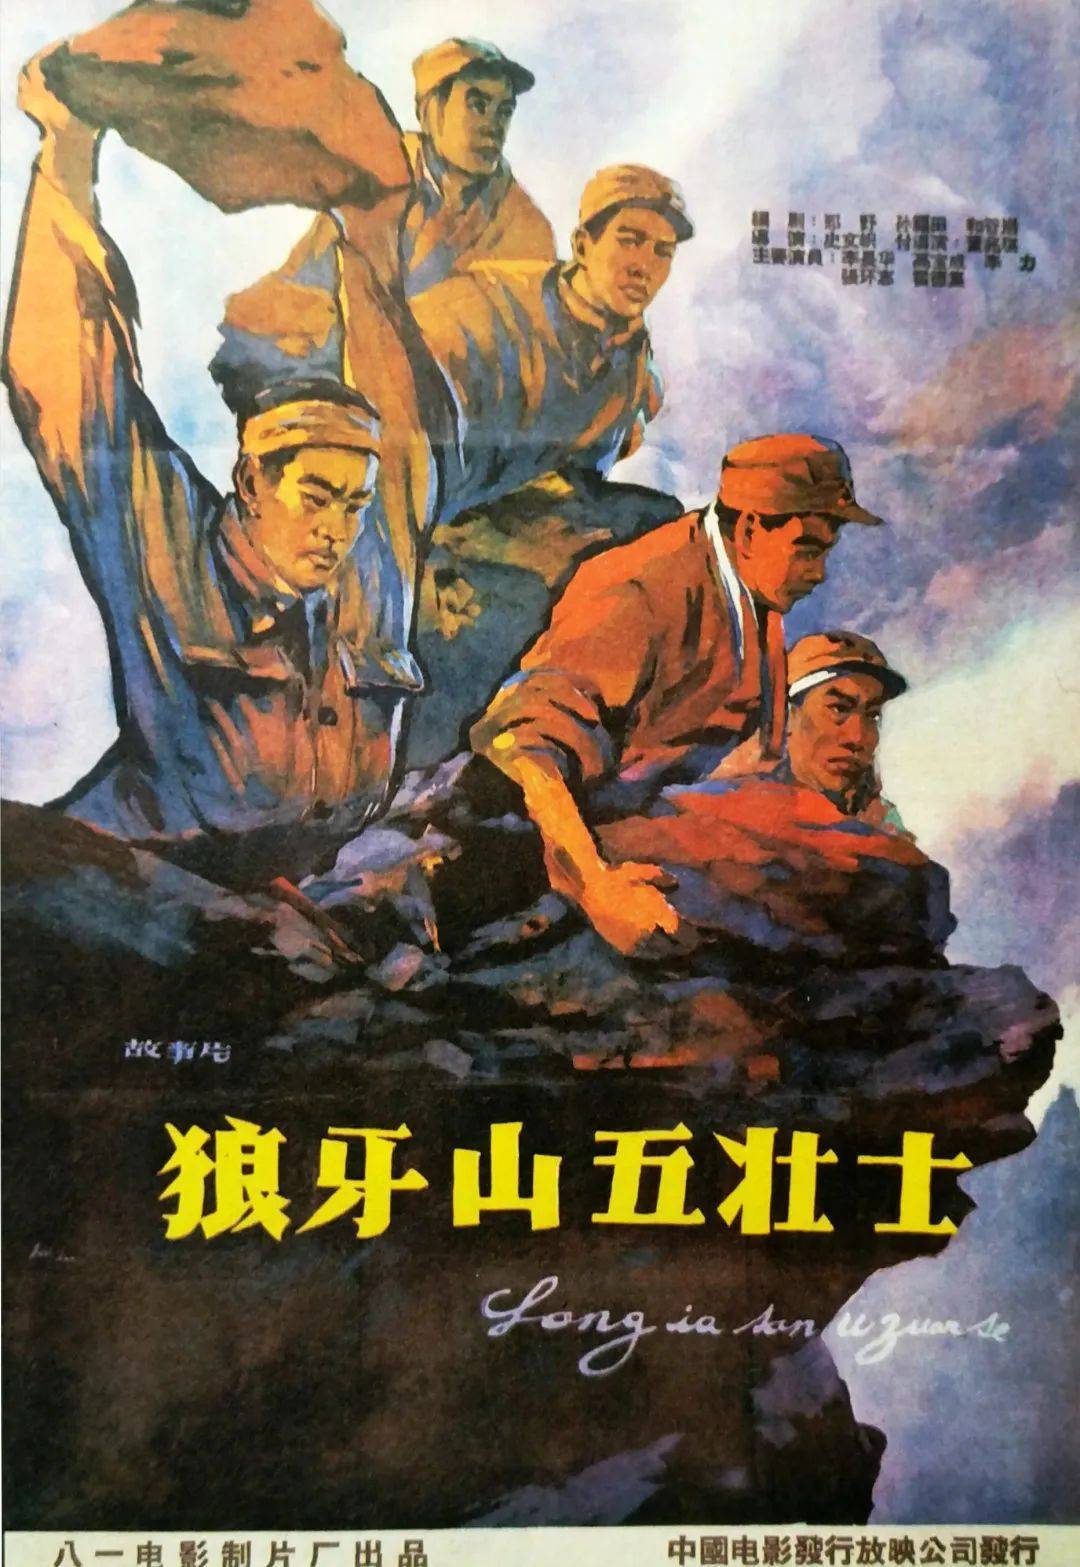 《狼牙山五壮士》该片以李白烈士的事迹为原型,讲述了中共党员李侠